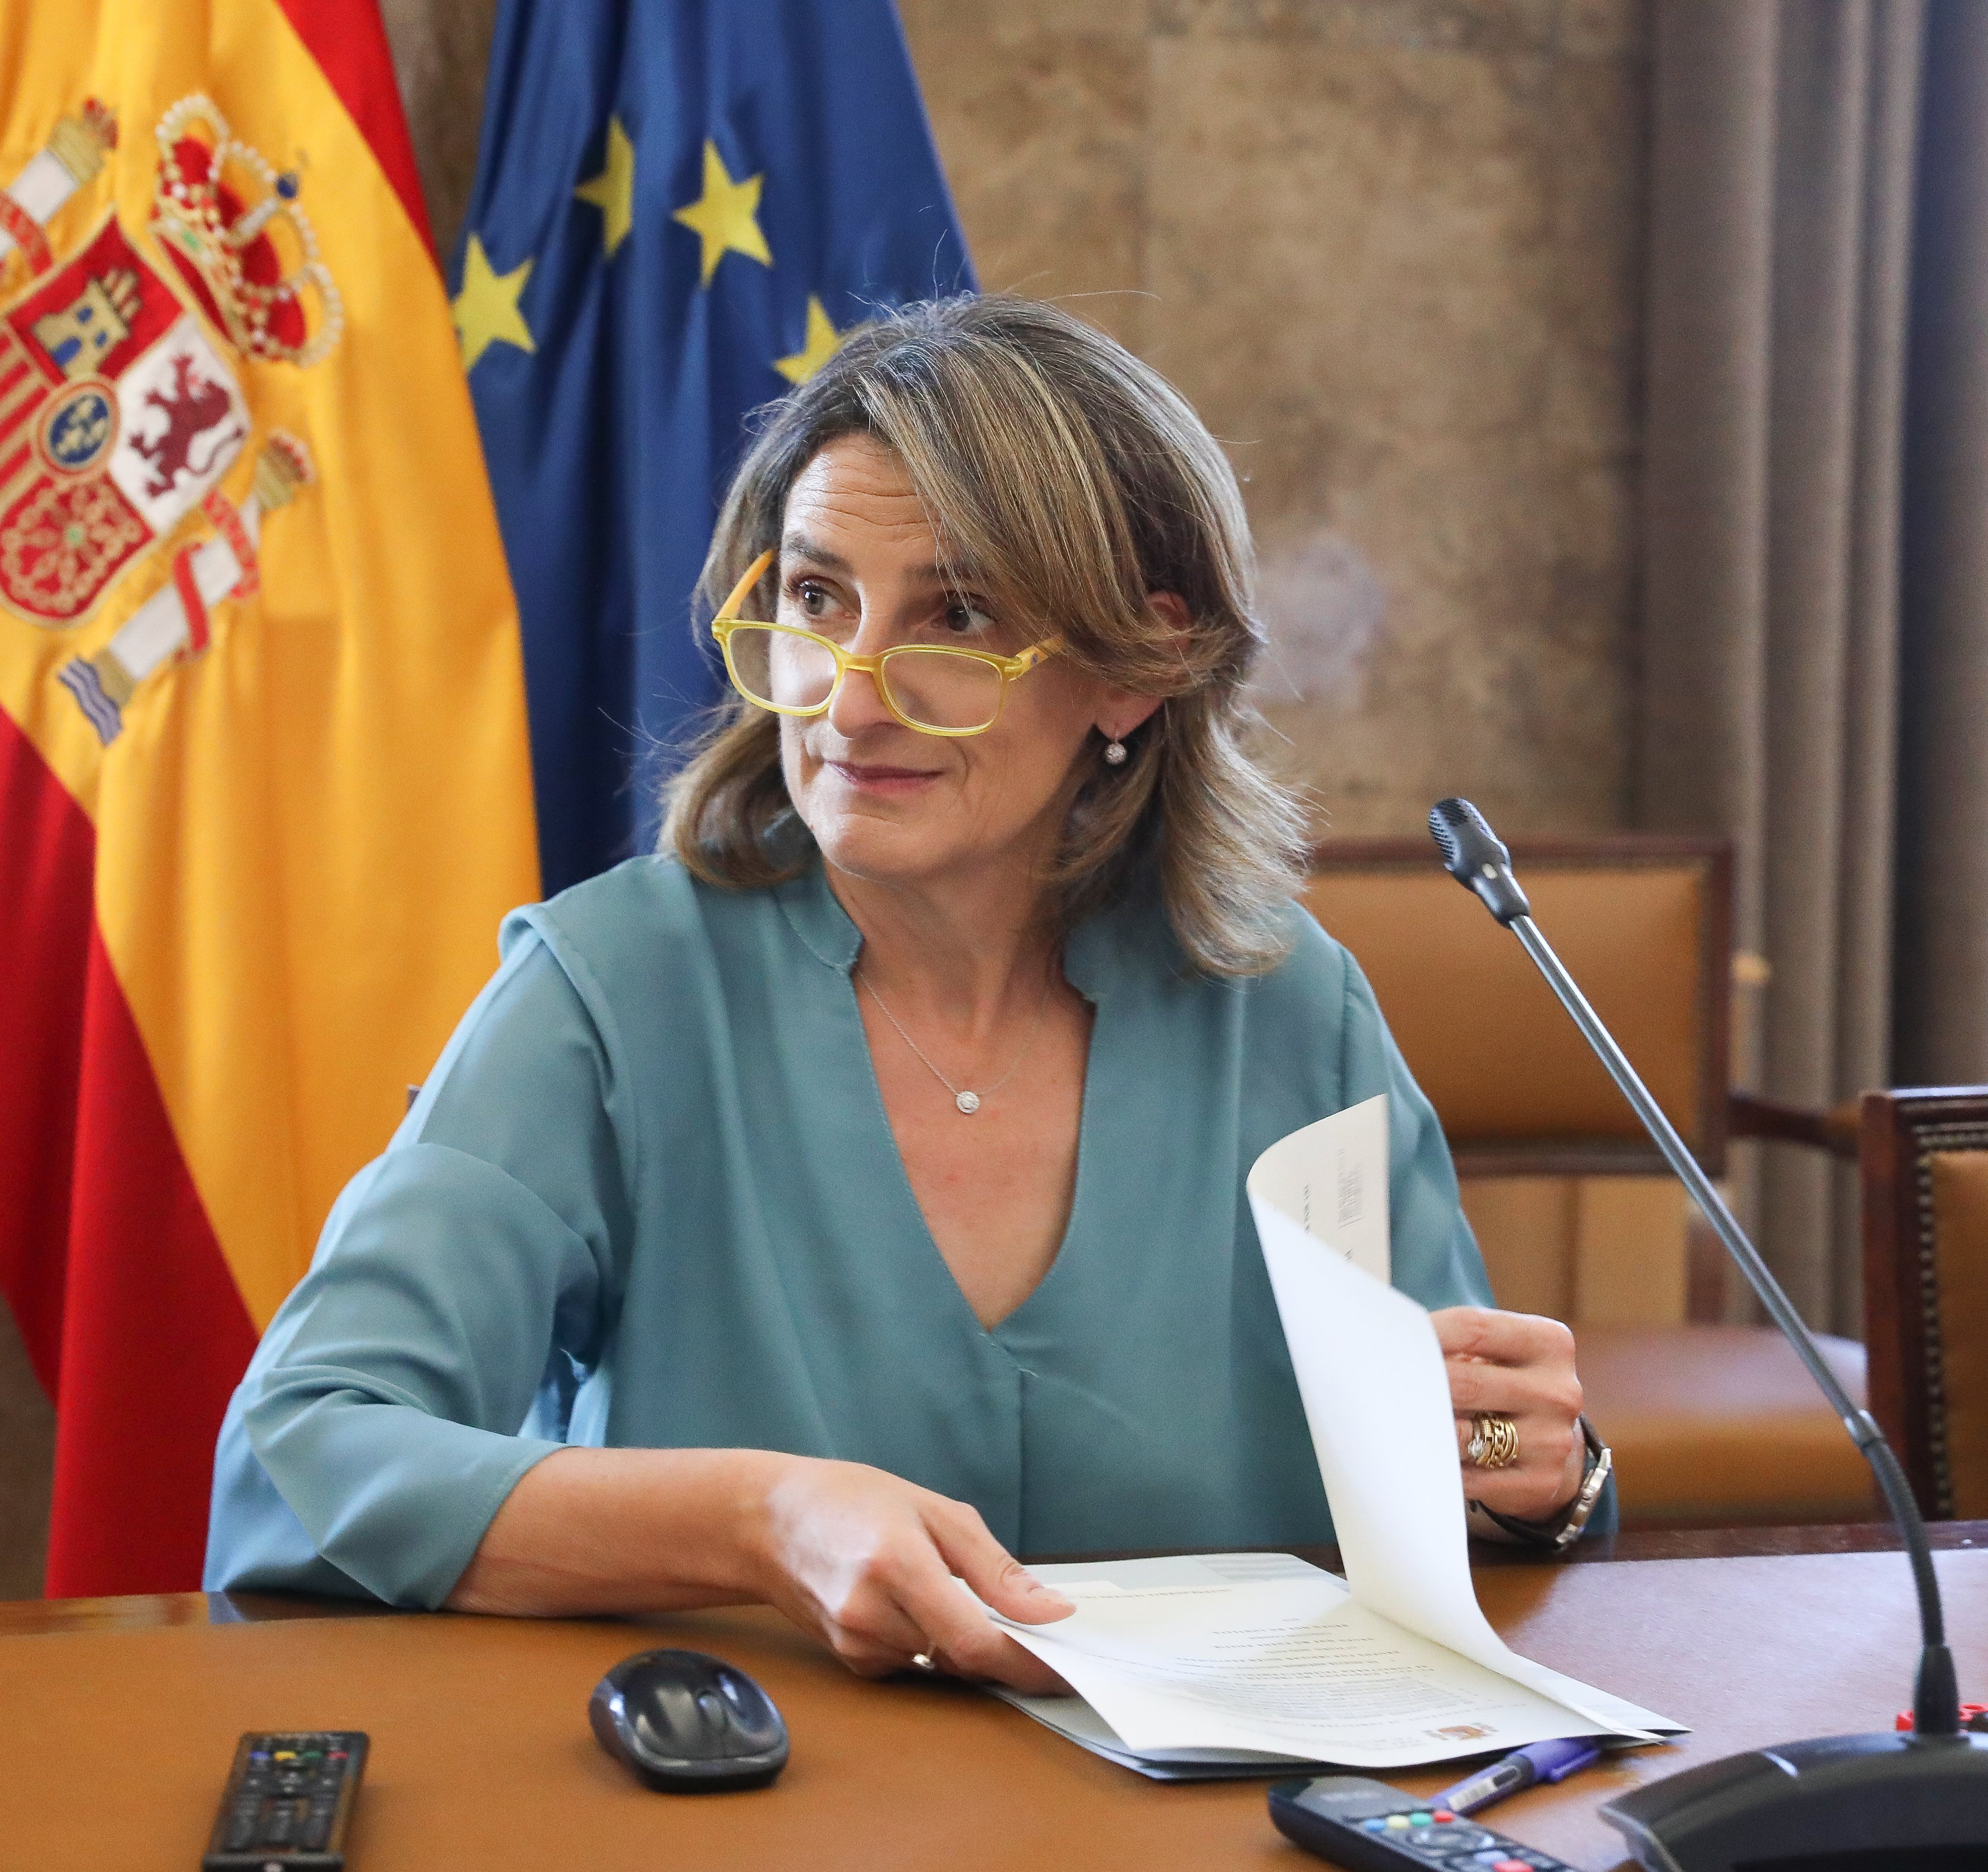 Teresa Ribera treu pit del nou MidCat, el BarMar: "Té vocació europeista i solidària"